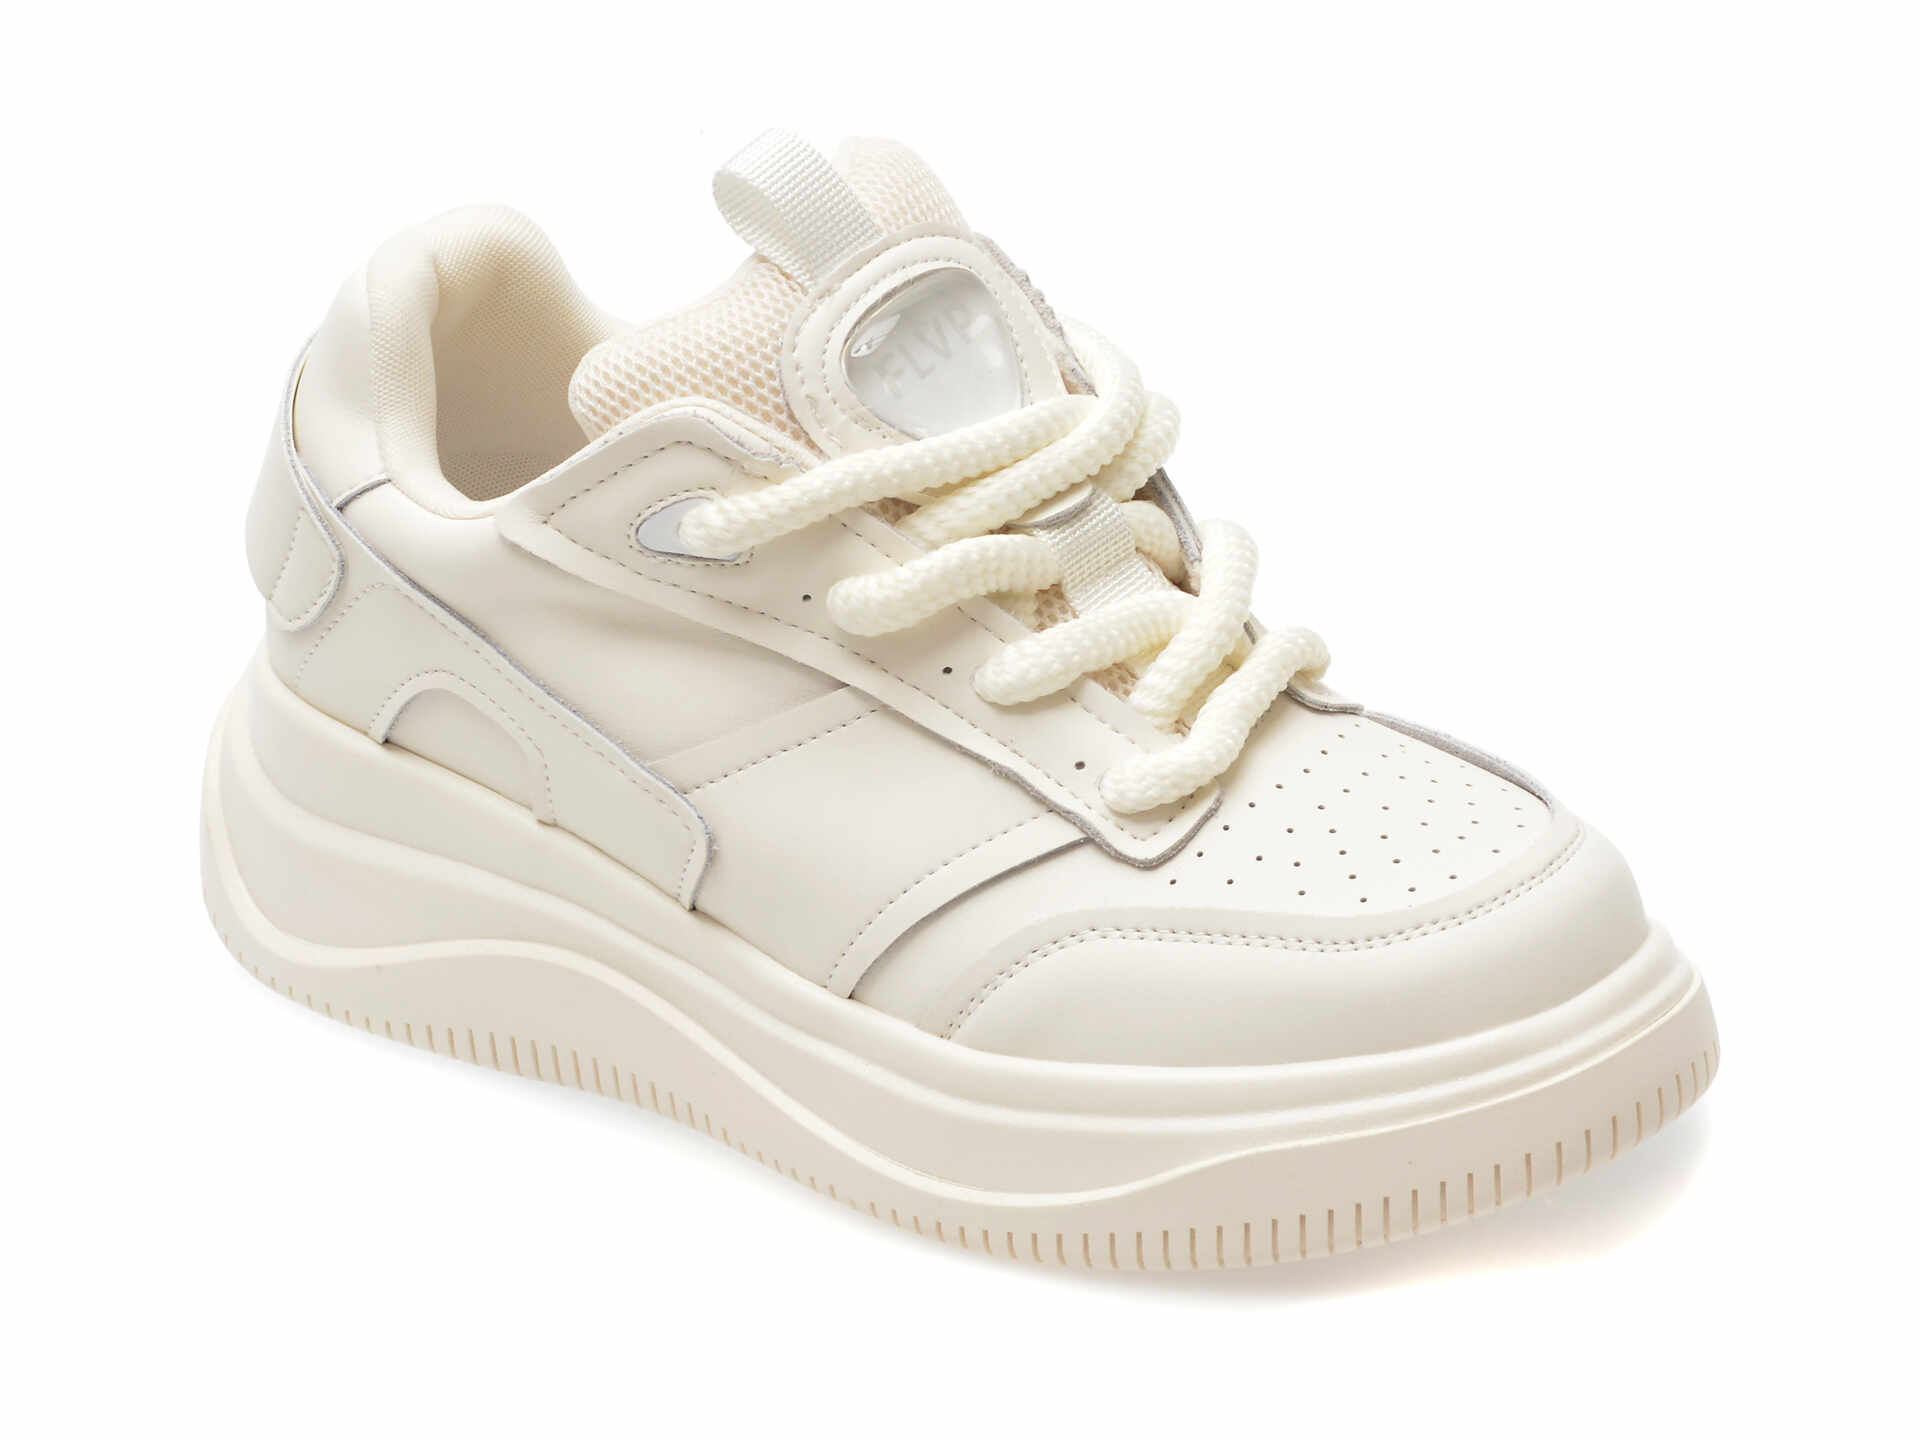 Pantofi casual FLAVIA PASSINI albi, 230939, din piele naturala